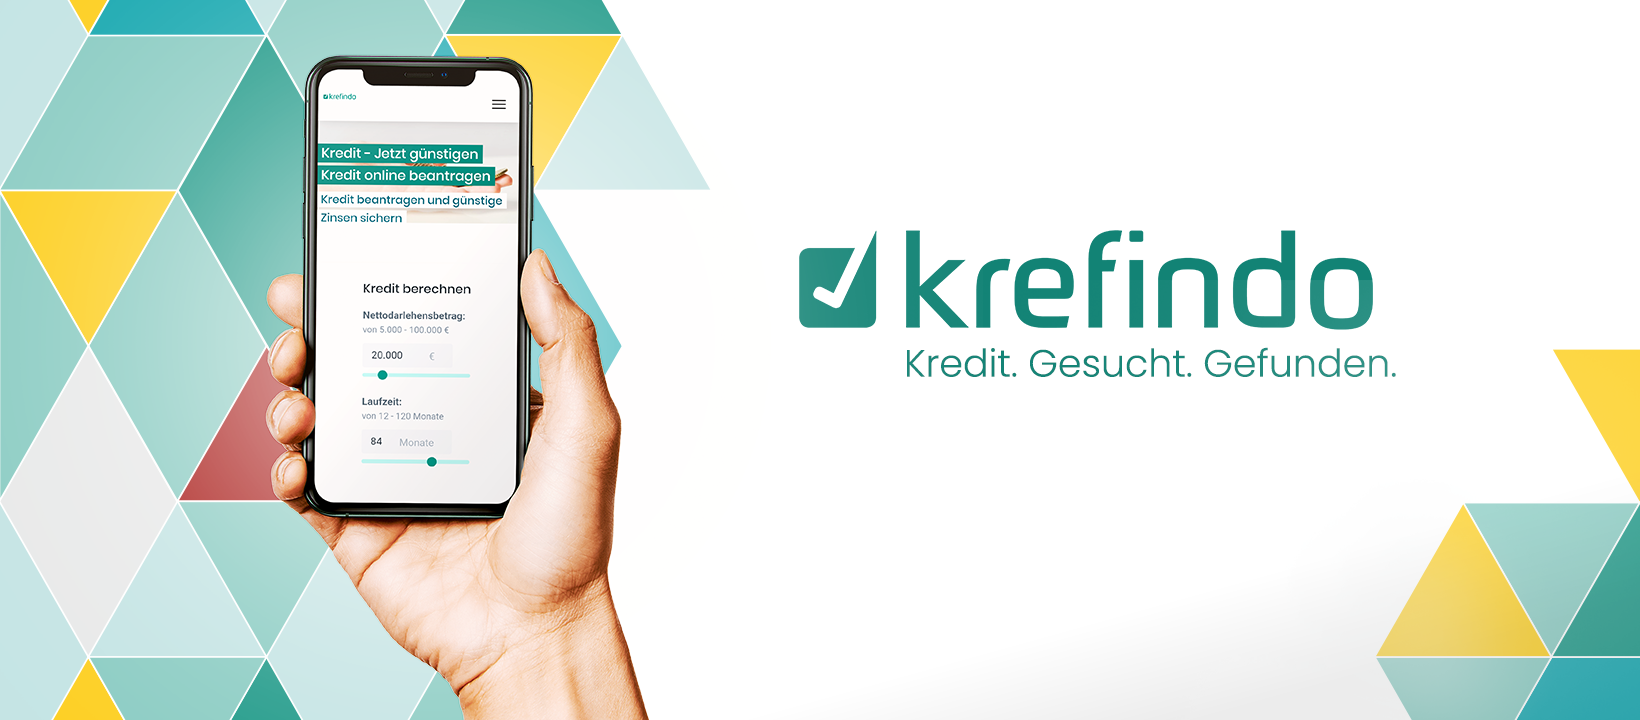 krefindo / startup von Dresden / Background